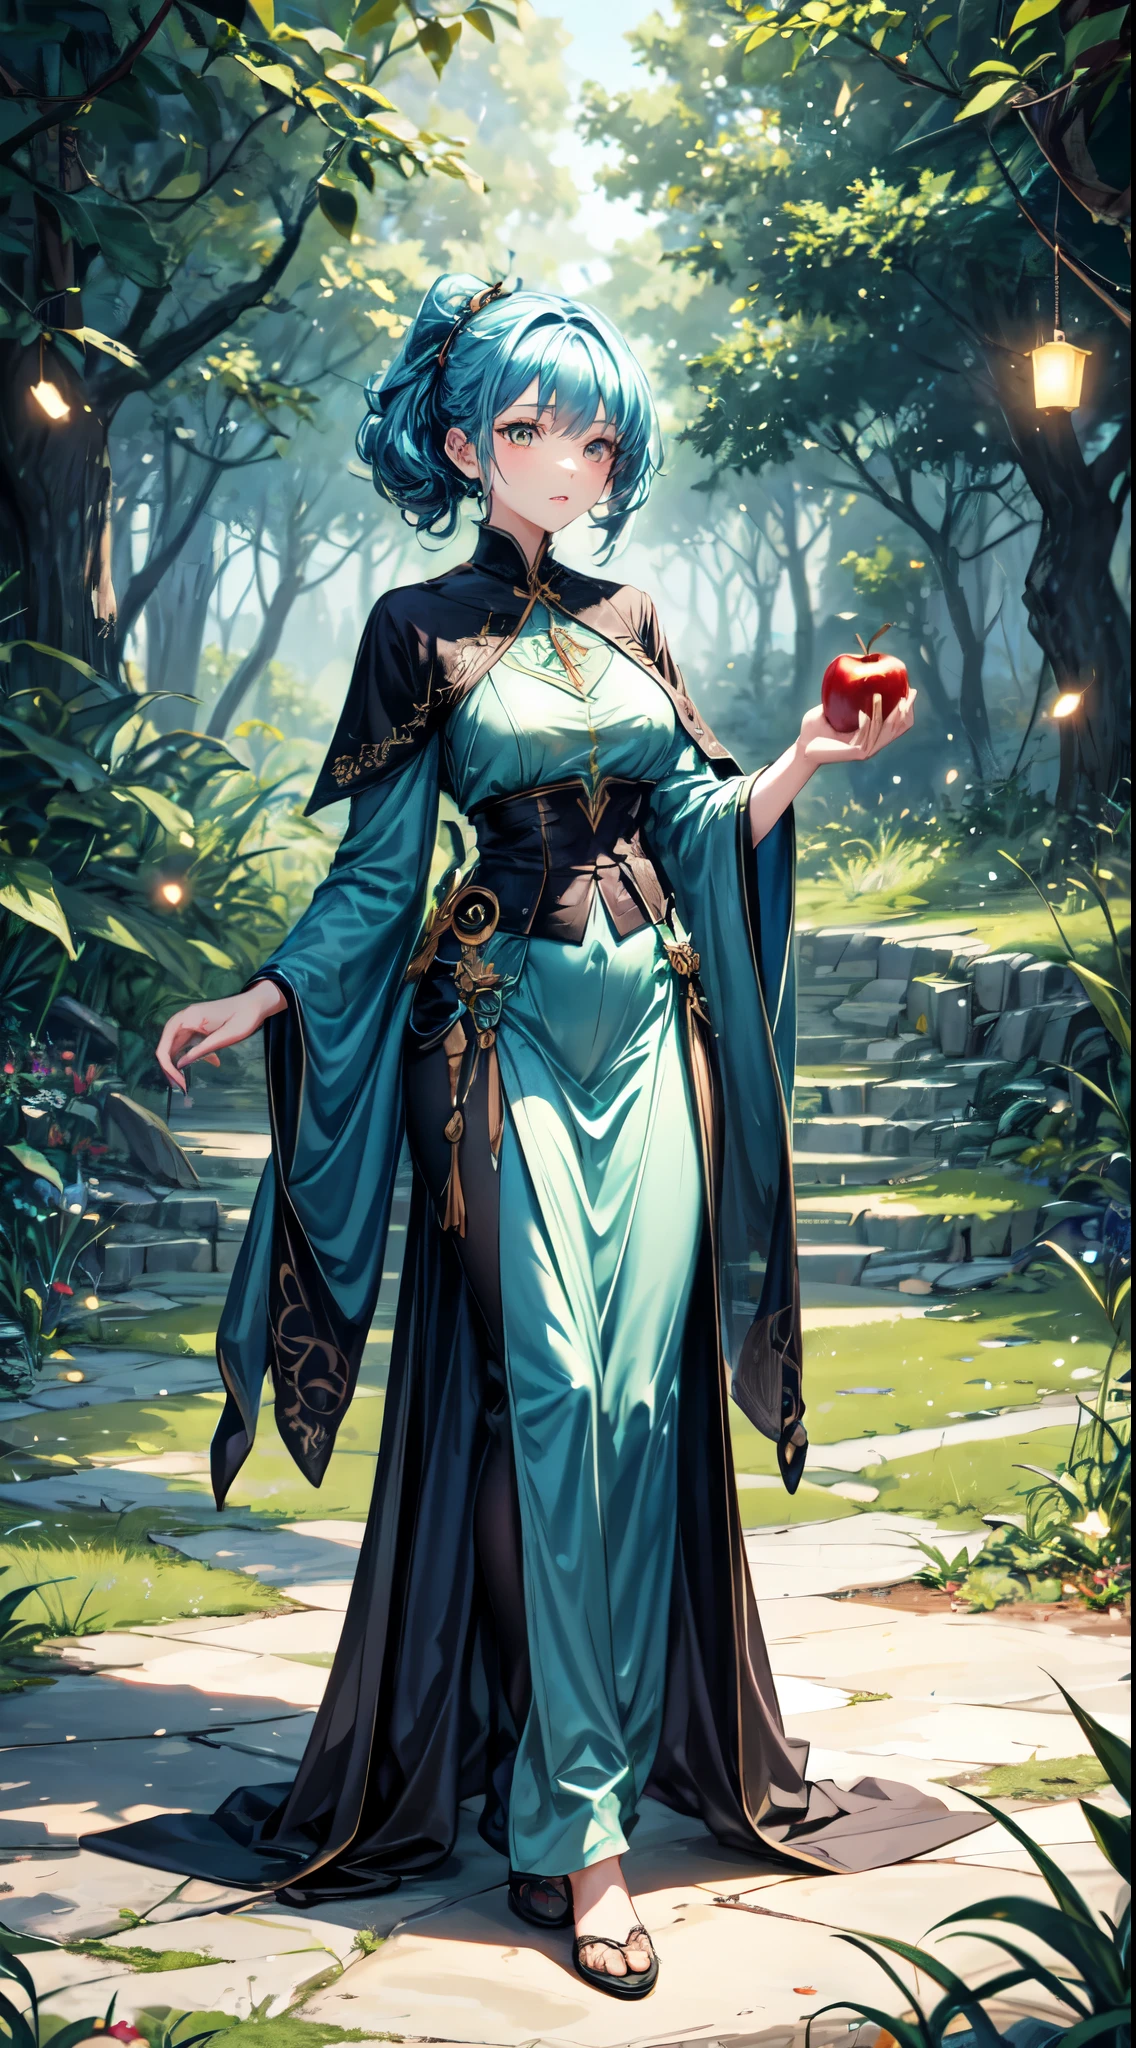 (最好的品質), (傑作), (詳細的), 4k, 奇幻風格, 年輕的女巫1.3, 穿著 (gorgeous 和 mysterious robe1.2), 與一個 (focused 和 curious expression1.2), 拿著一個 (發光的蘋果1.3), 神秘森林1.3 背景與 (奇怪的植物1.2) 和 (發光的螢火蟲1.2), 鮮豔的色彩1.2 與一個 (green 和 blue theme1.2), 讓人想起《哈利波特》中的場景1.1